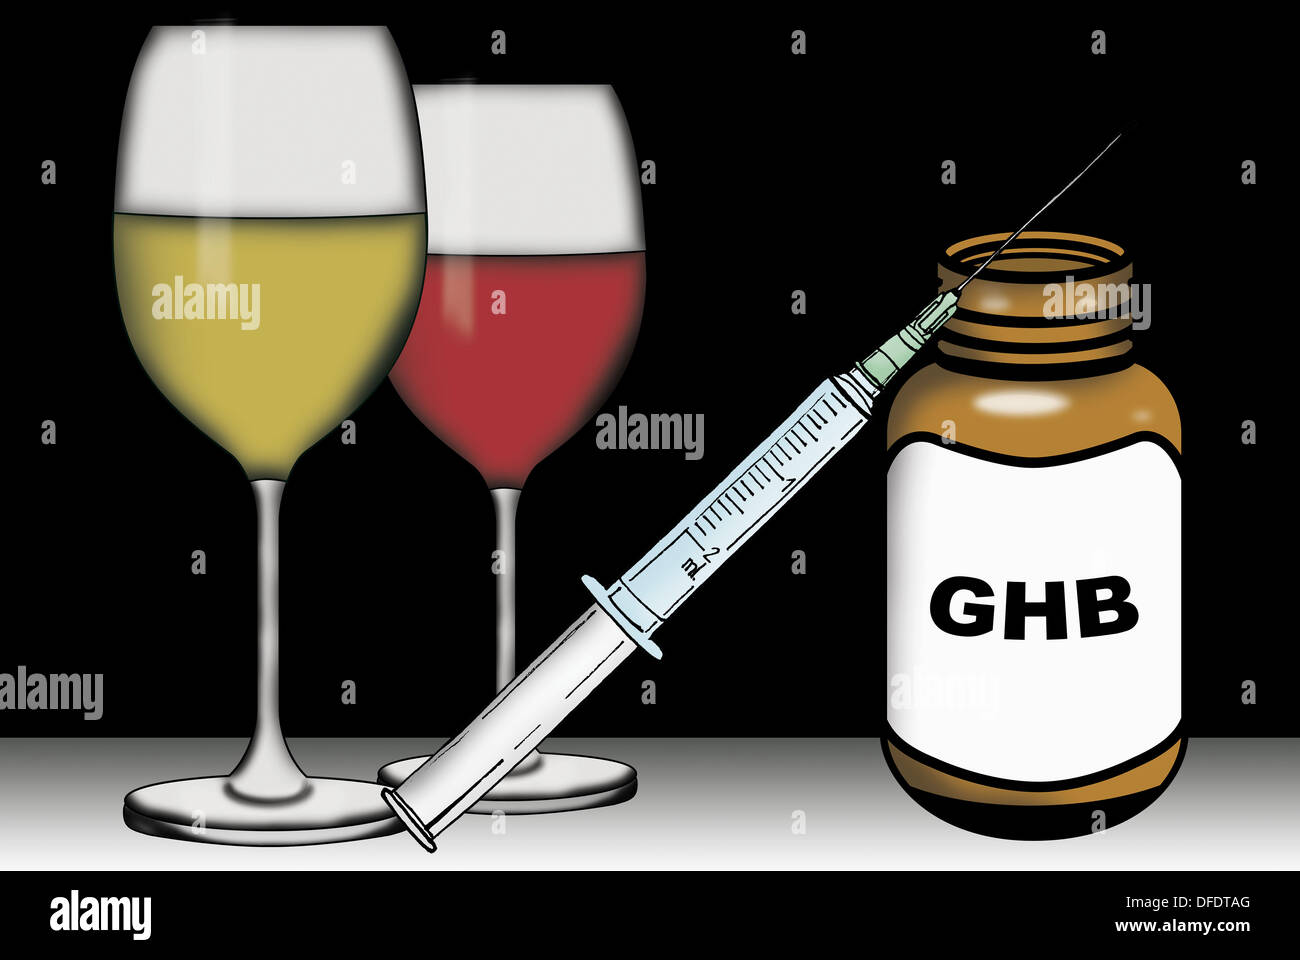 Ghb drugs immagini e fotografie stock ad alta risoluzione - Alamy